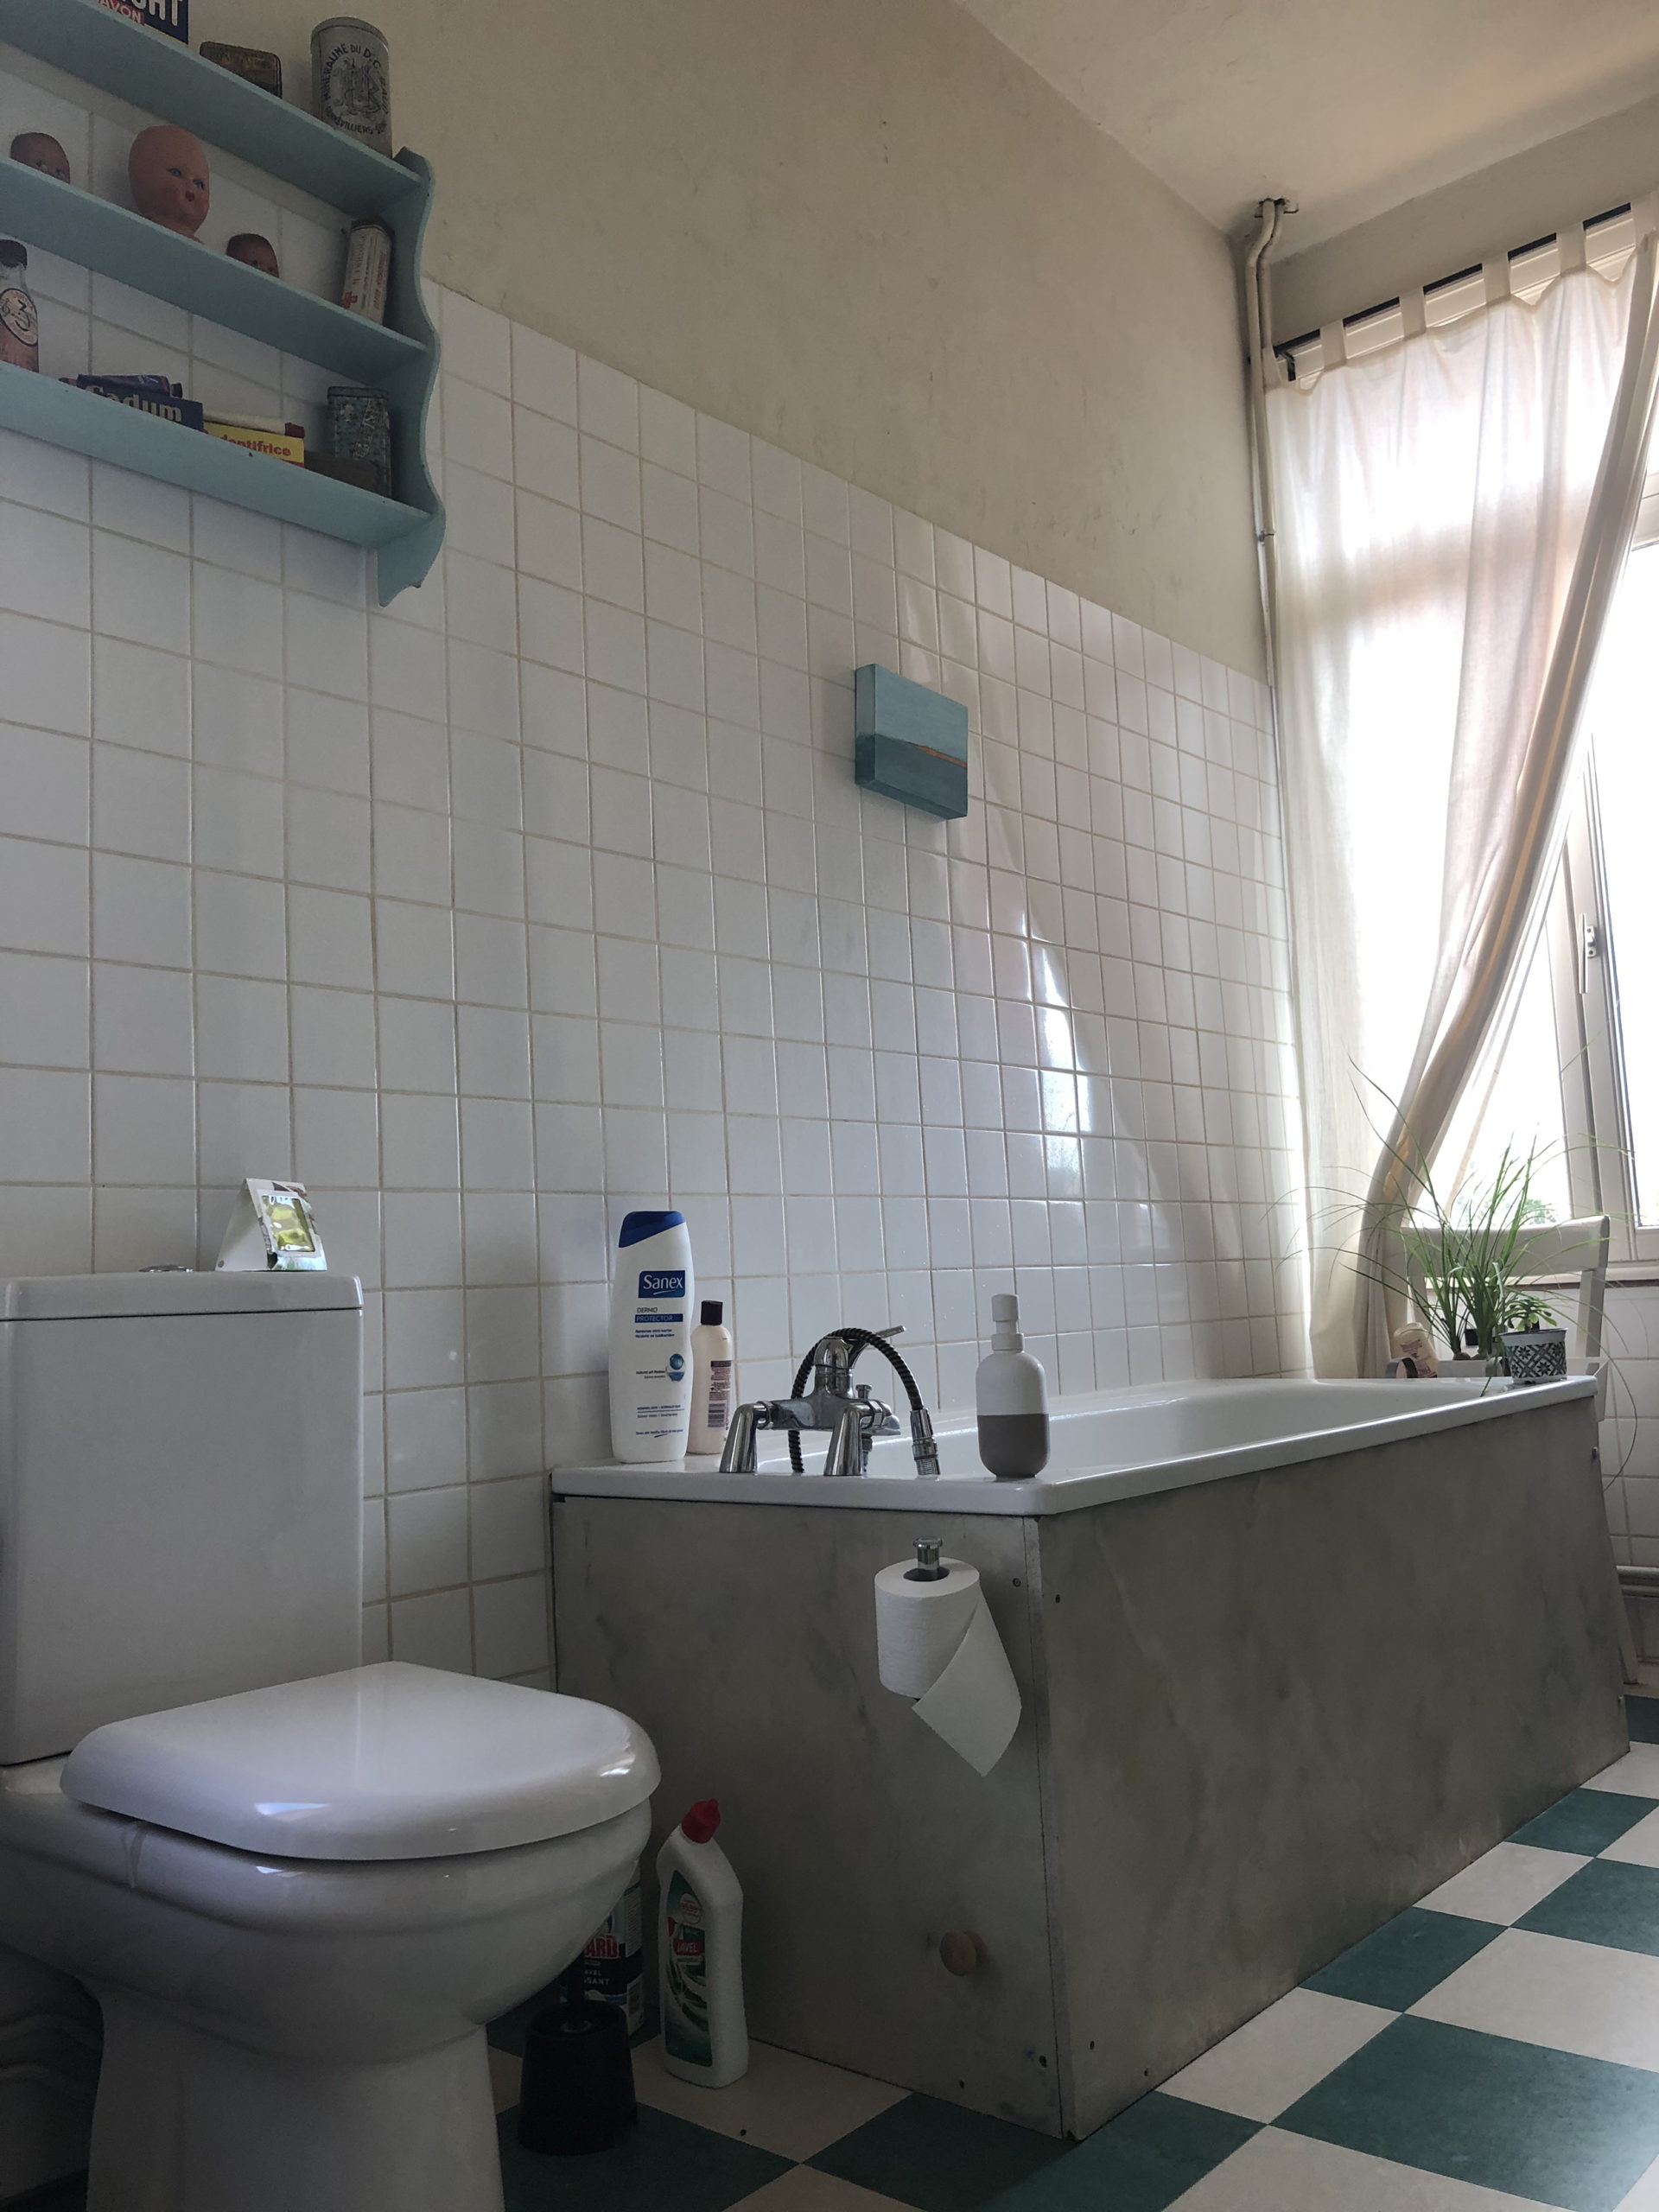 CHAMBRE D'HÔTES EN BAIE DE SOMME salle de bains chambre d'hôte